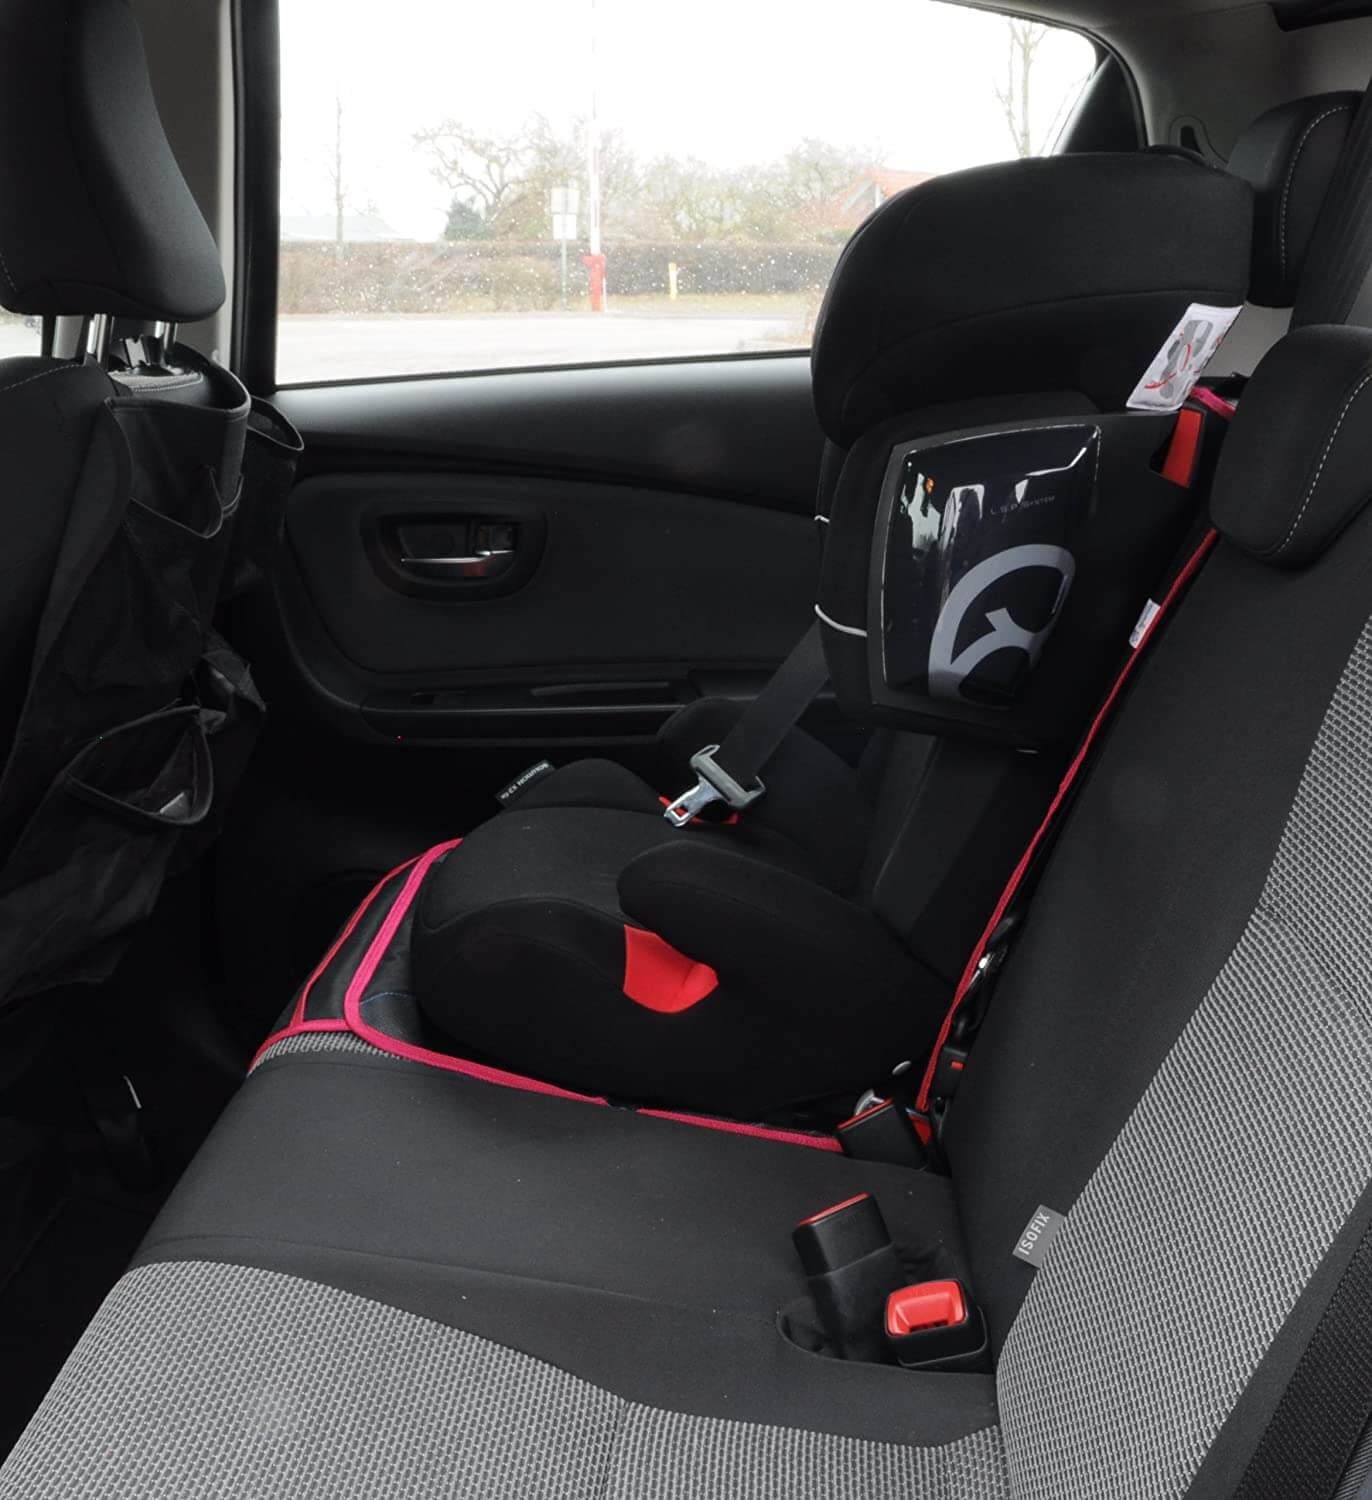 Wumbi Pink Autokindersitz leicht zu Sitzschoner, Sitzschutz Sitzbezug Wasserabweisend säubern Kindersitzunterlage